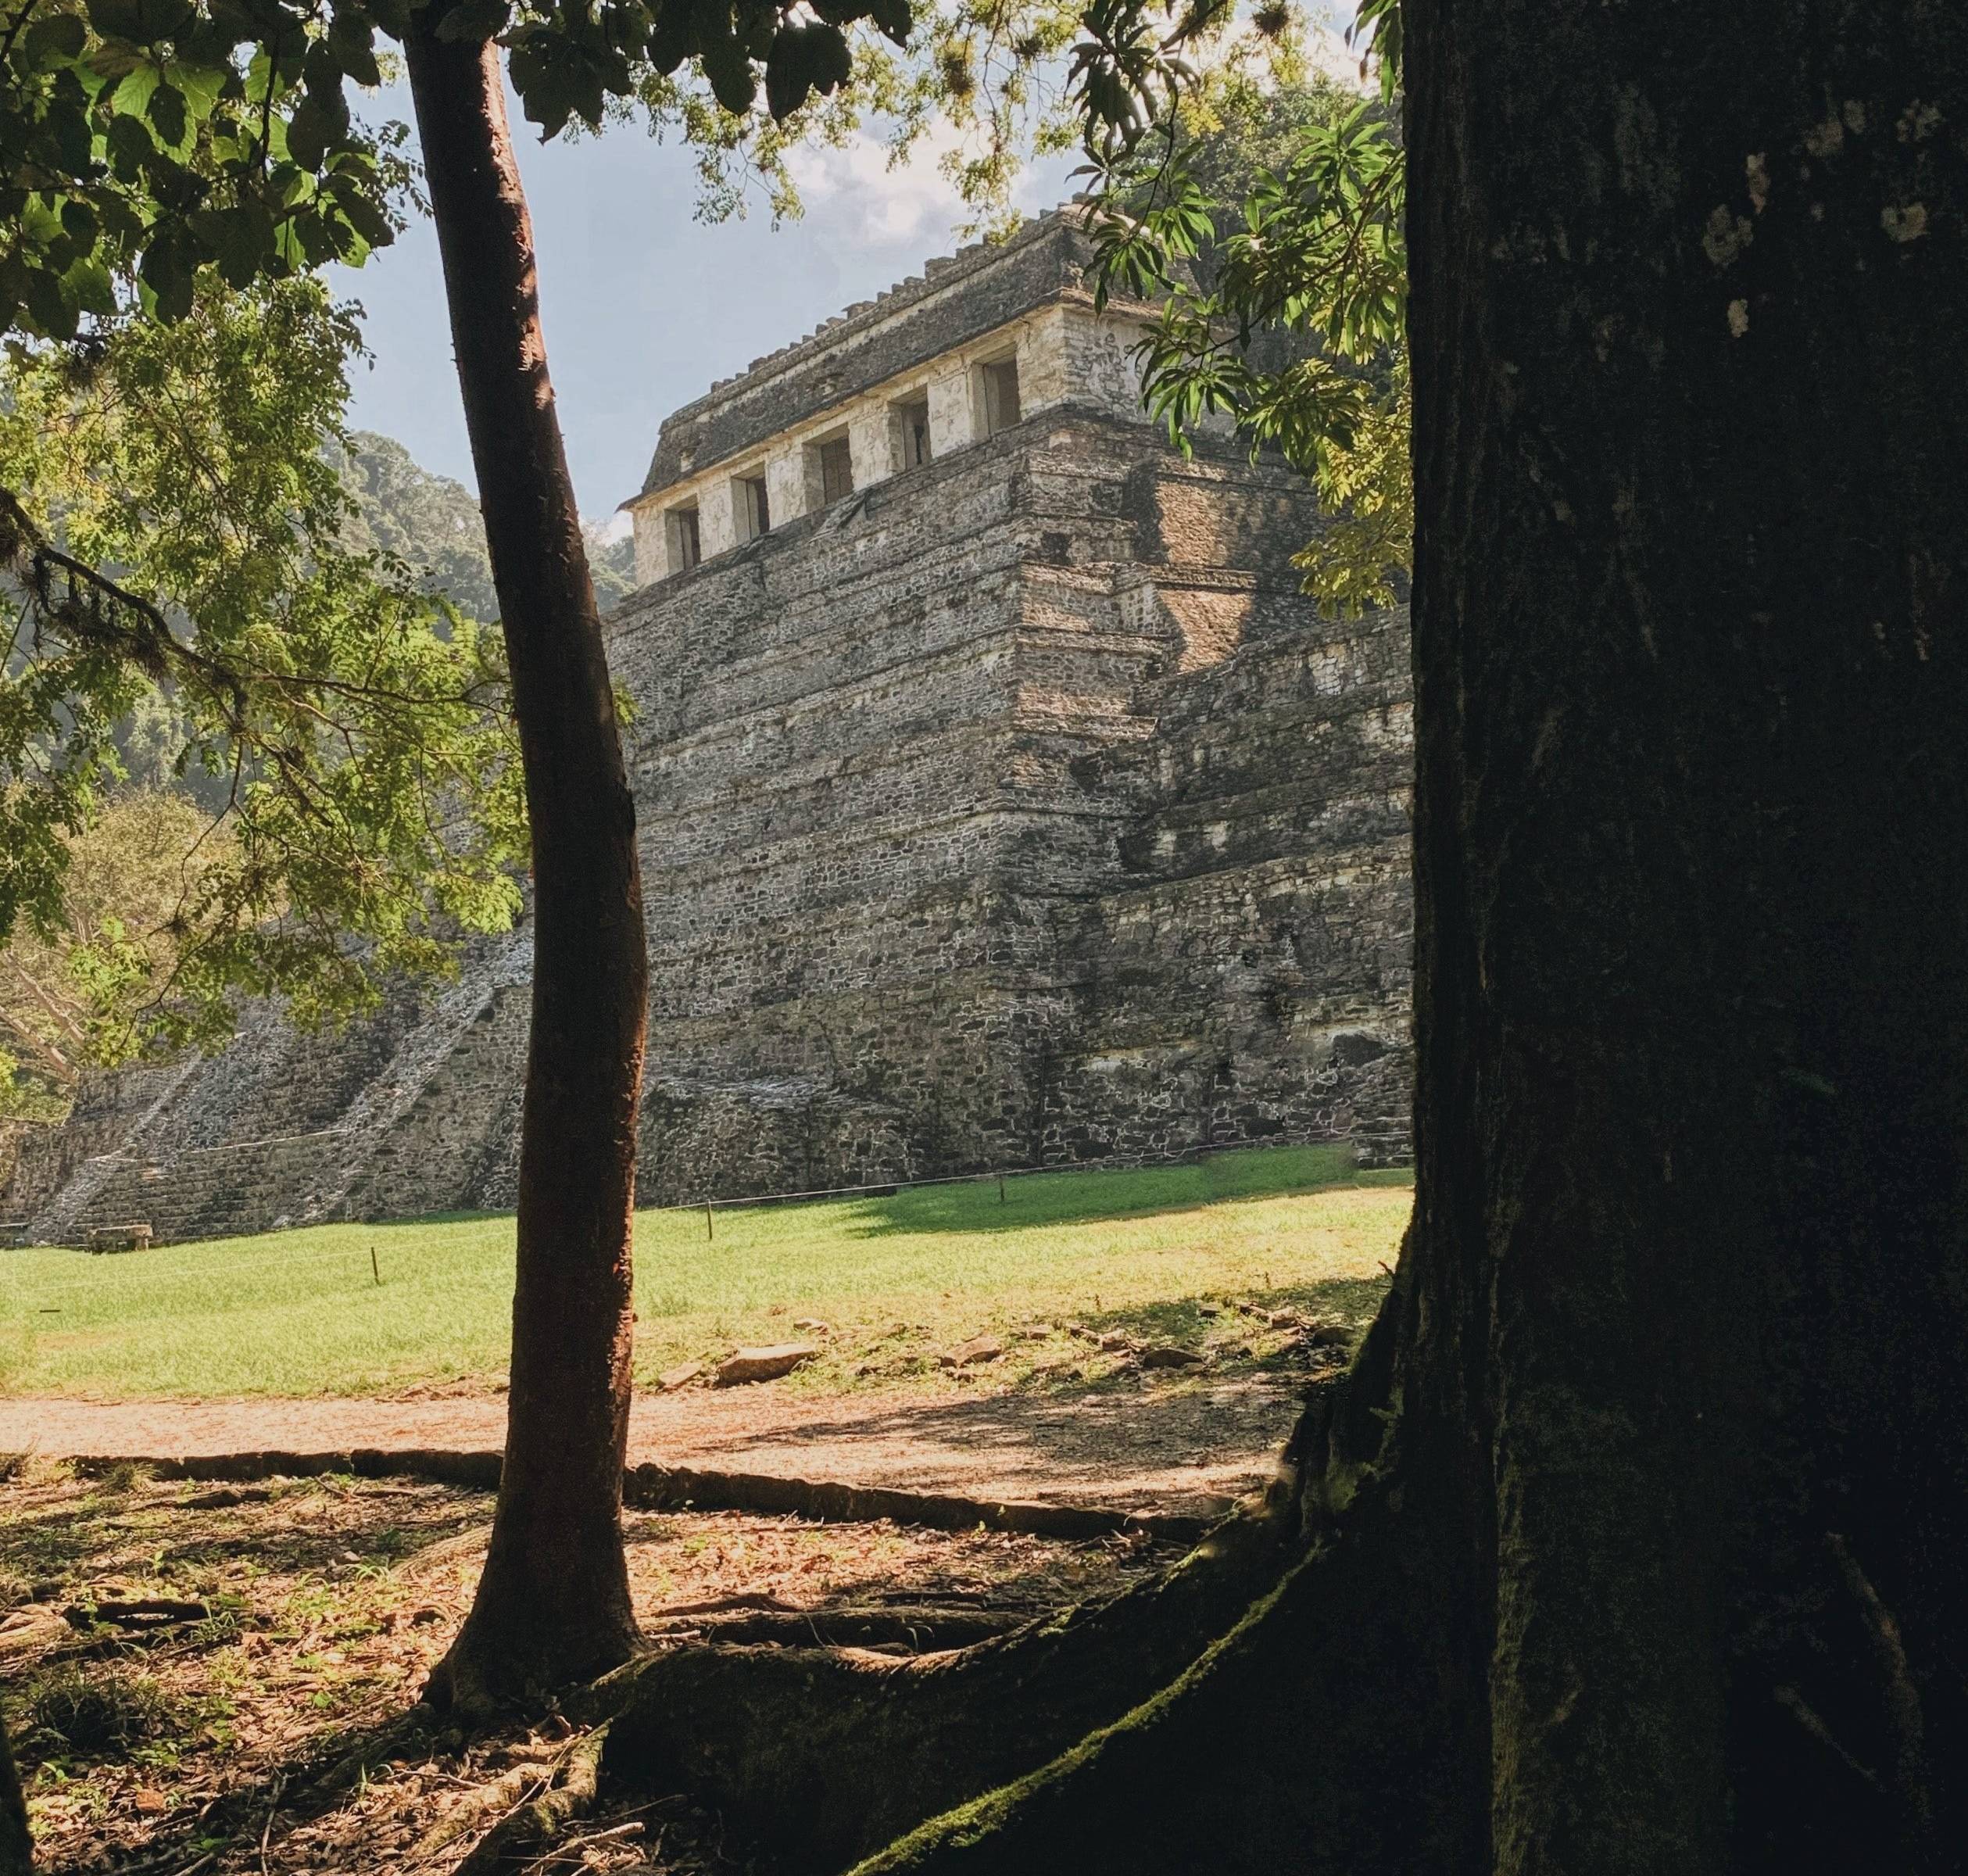 La zona archeologica di Palenque e partenza per Campeche